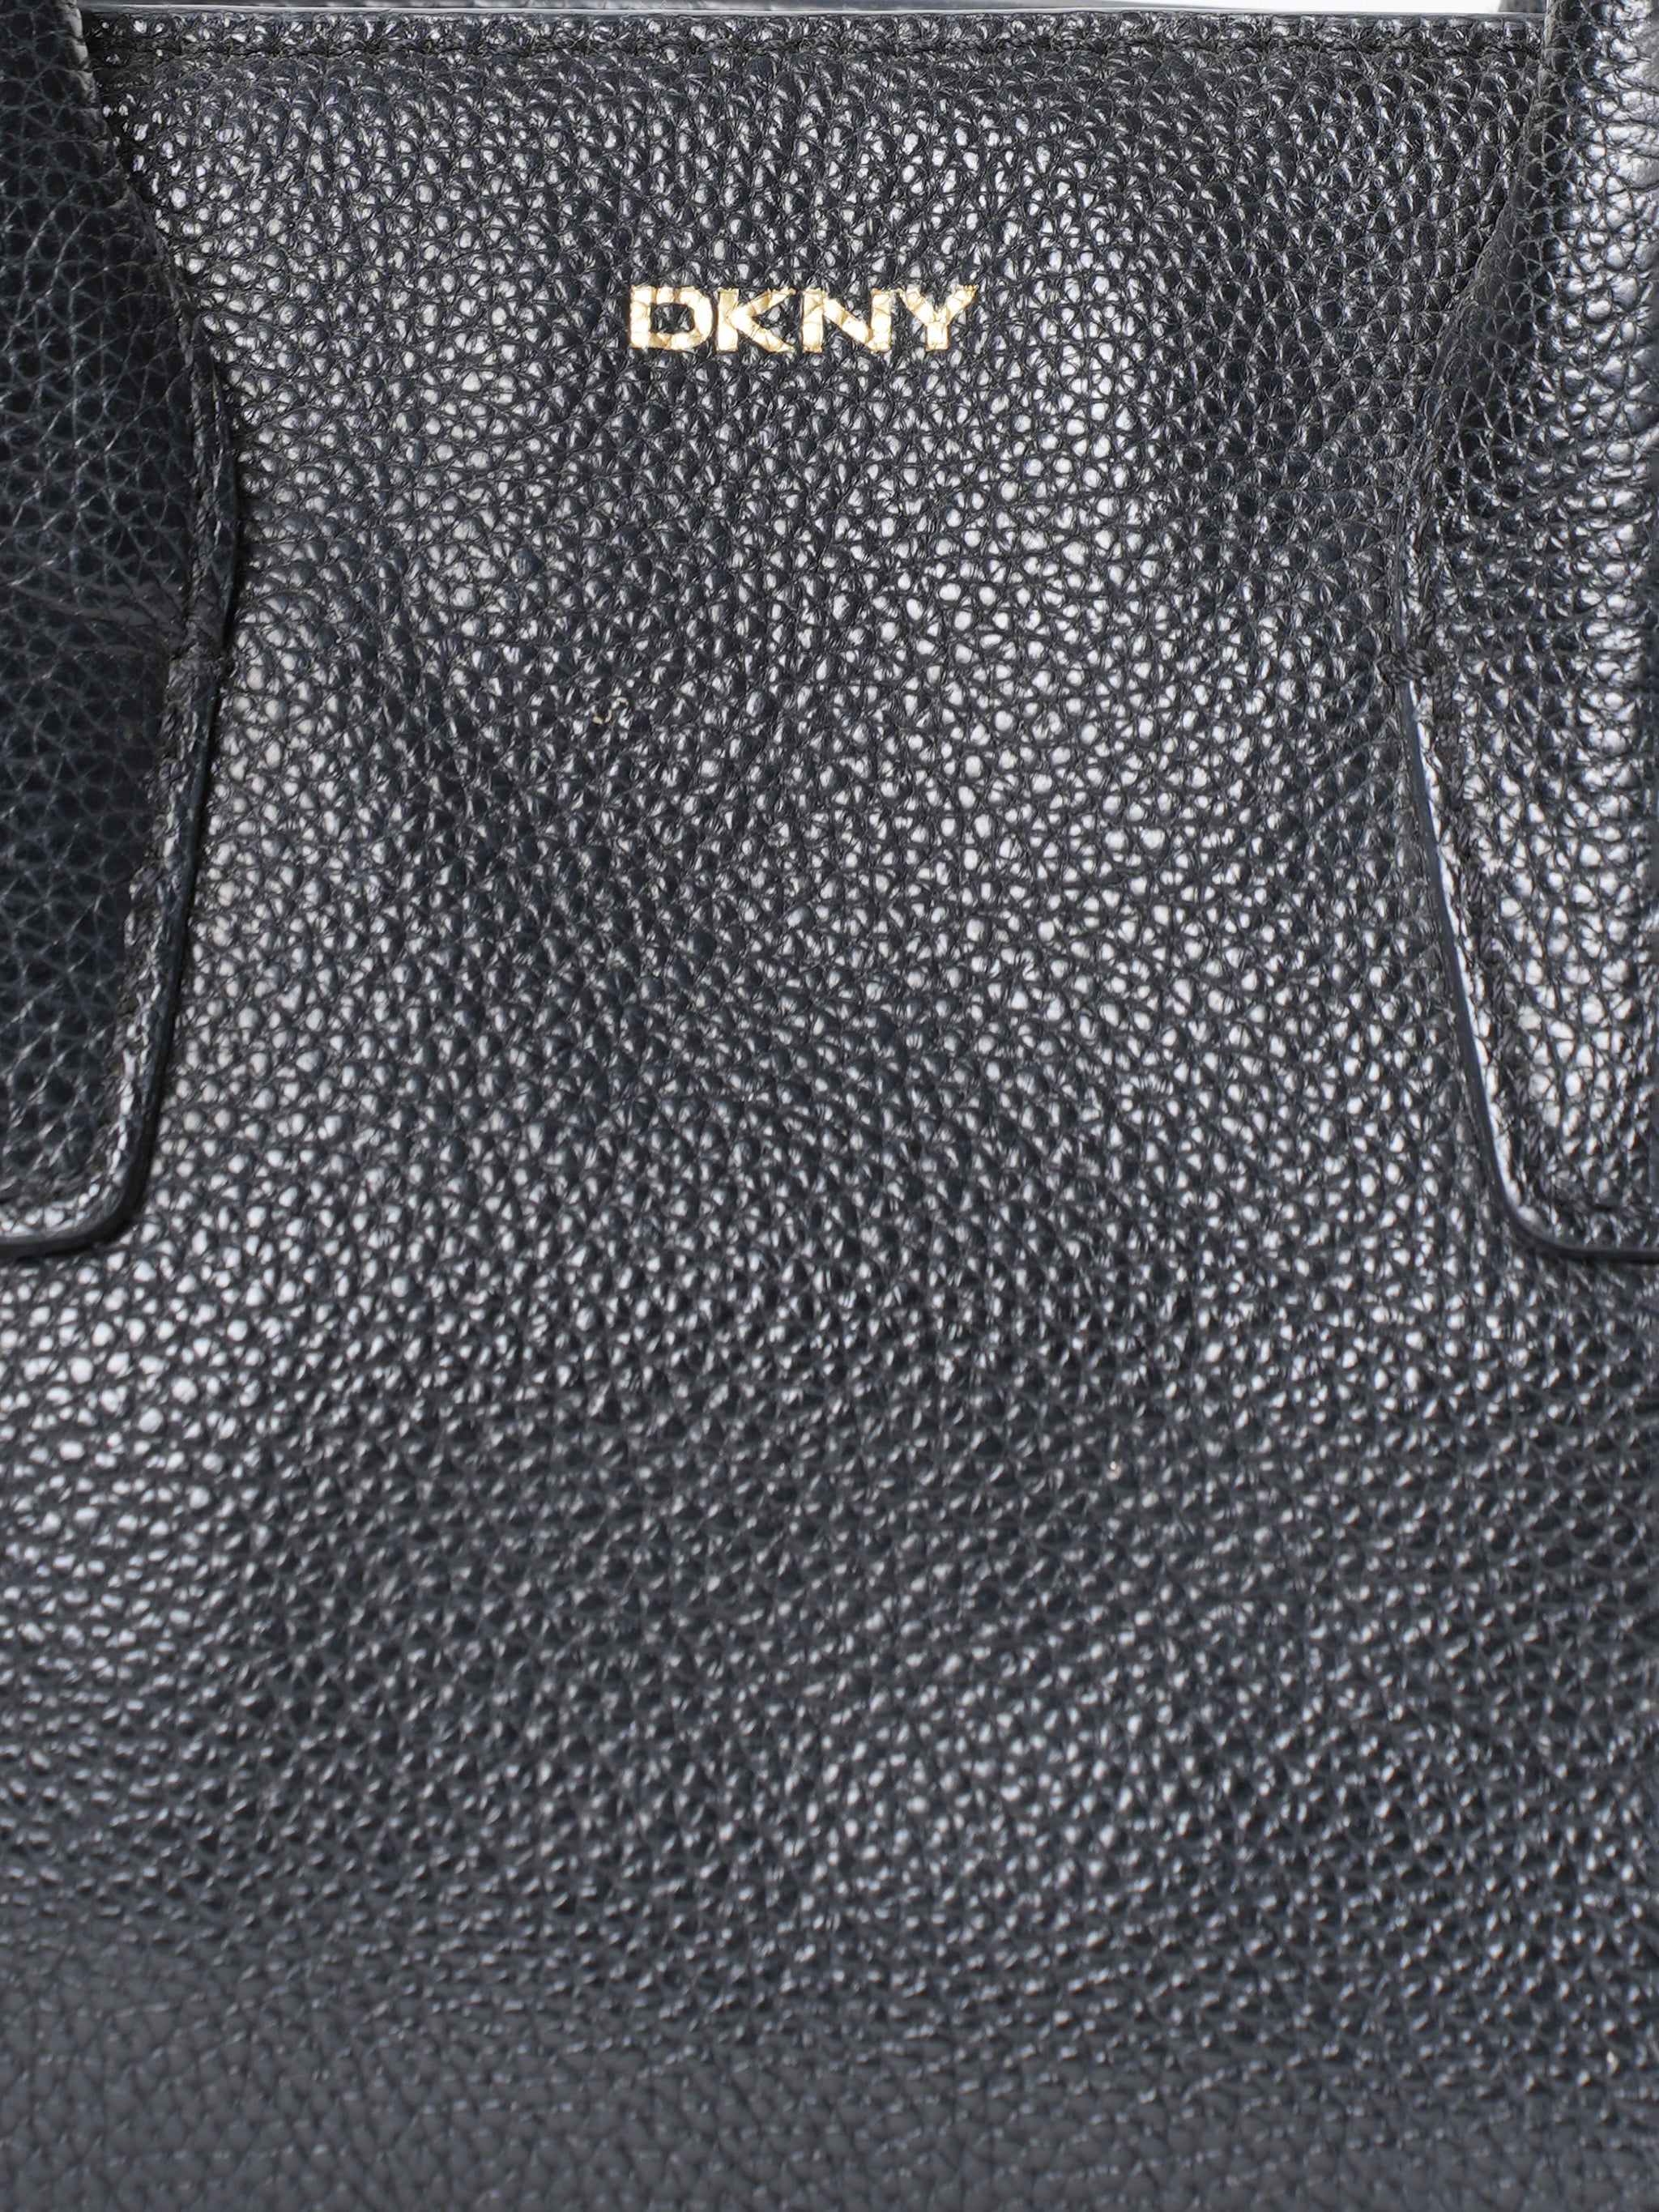 Dkny Black Mini Bag